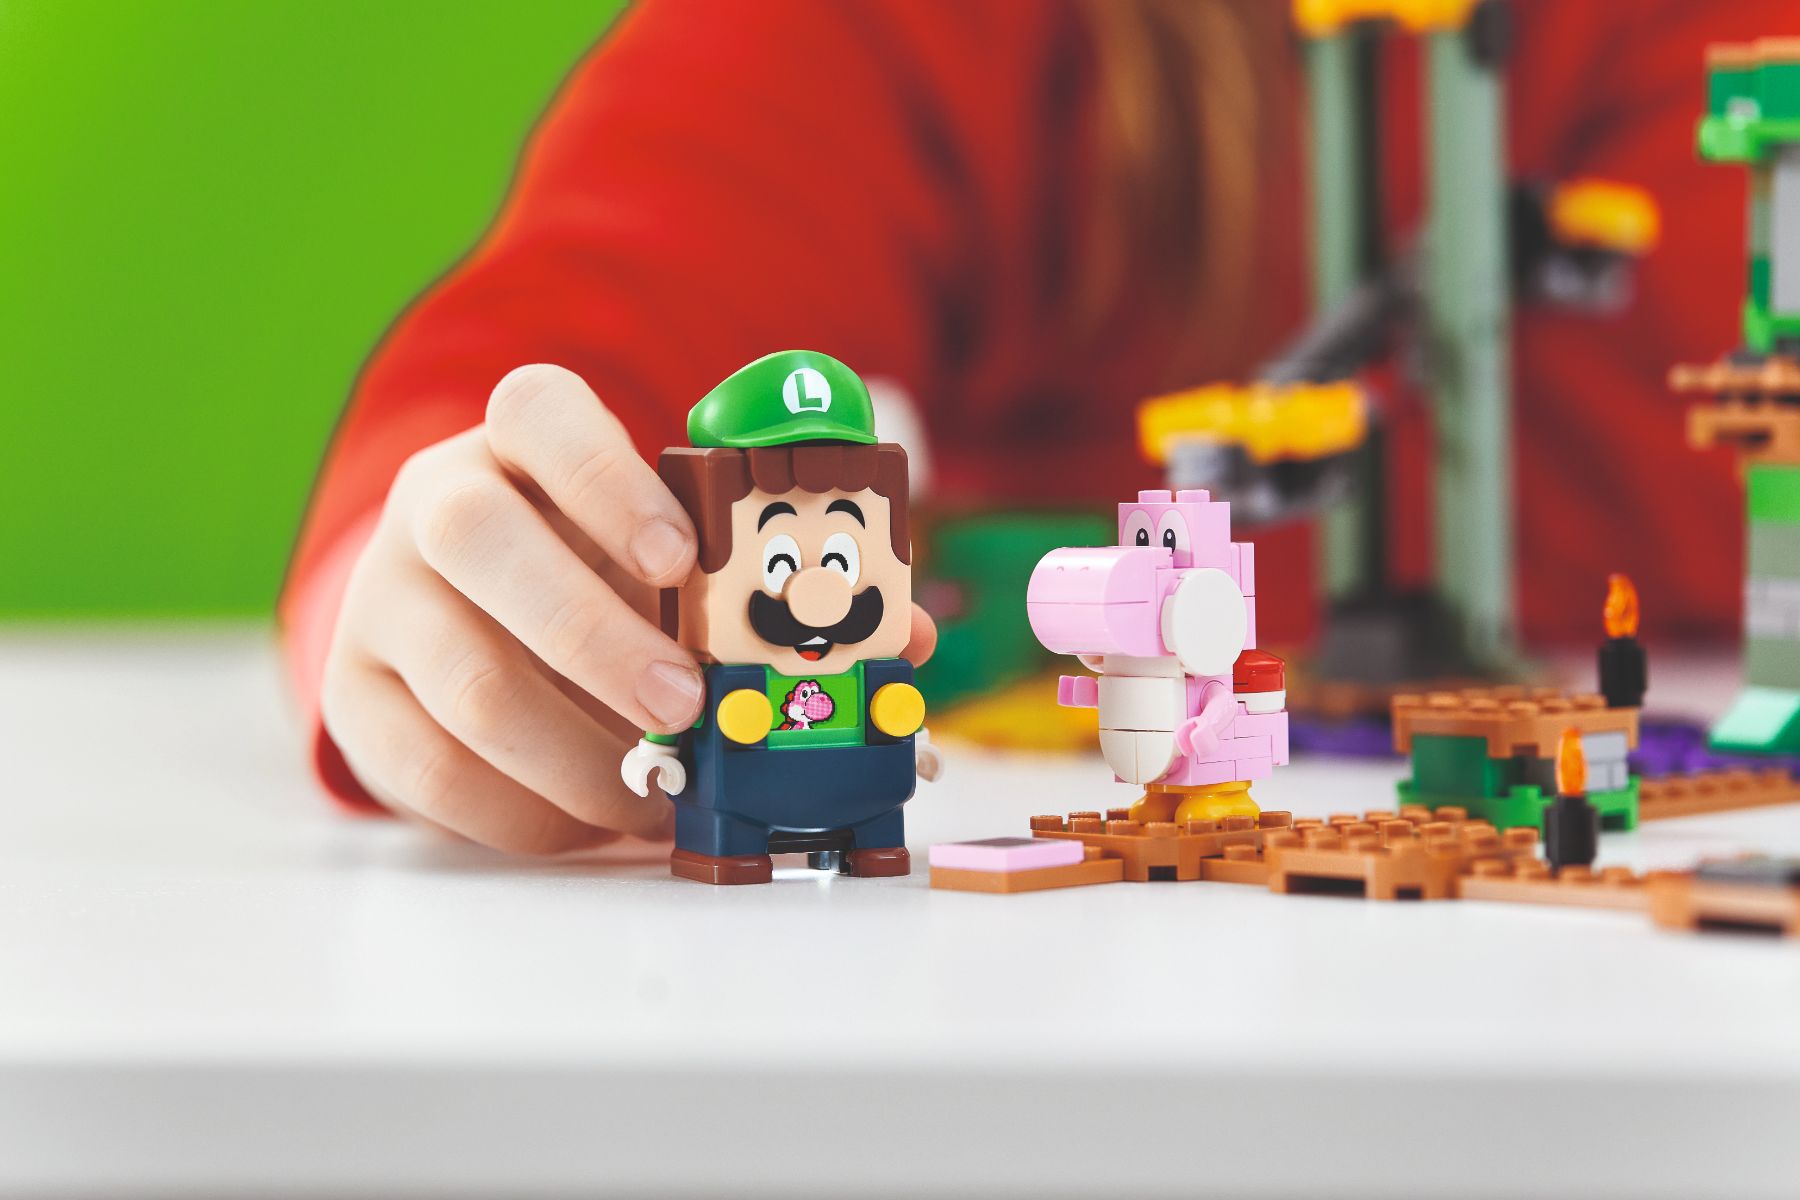 LEGO Super Mario Pack Inicial: Aventuras con Luigi, Juguete de Construcción  Mario Bros con Minifigura Interactiva, Regalos para Niños y Niñas de 6 Años  o Más y Fans del Videojuego 71387 